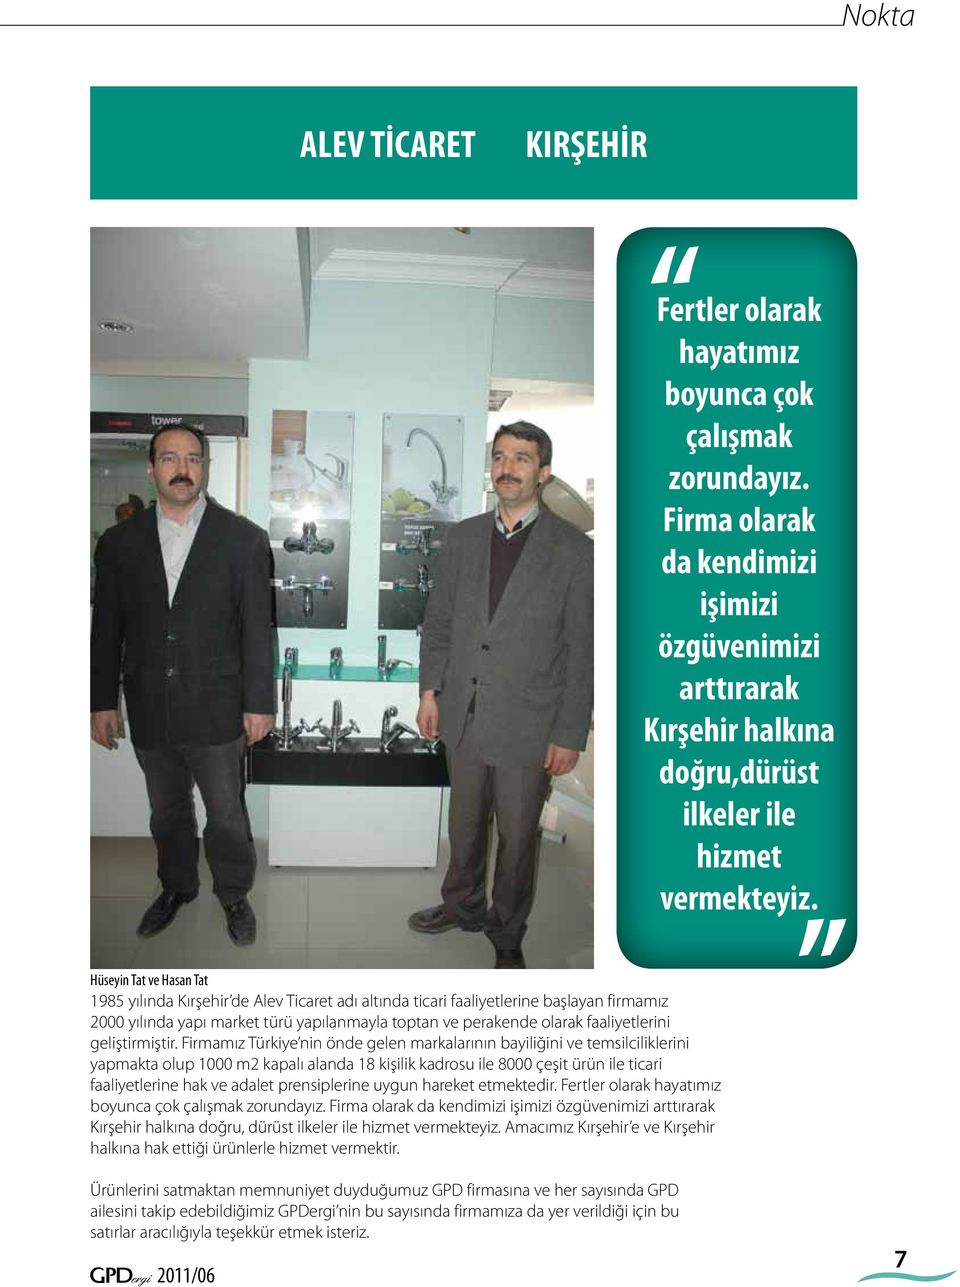 Firmamız Türkiye nin önde gelen markalarının bayiliğini ve temsilciliklerini yapmakta olup 1000 m2 kapalı alanda 18 kişilik kadrosu ile 8000 çeşit ürün ile ticari faaliyetlerine hak ve adalet